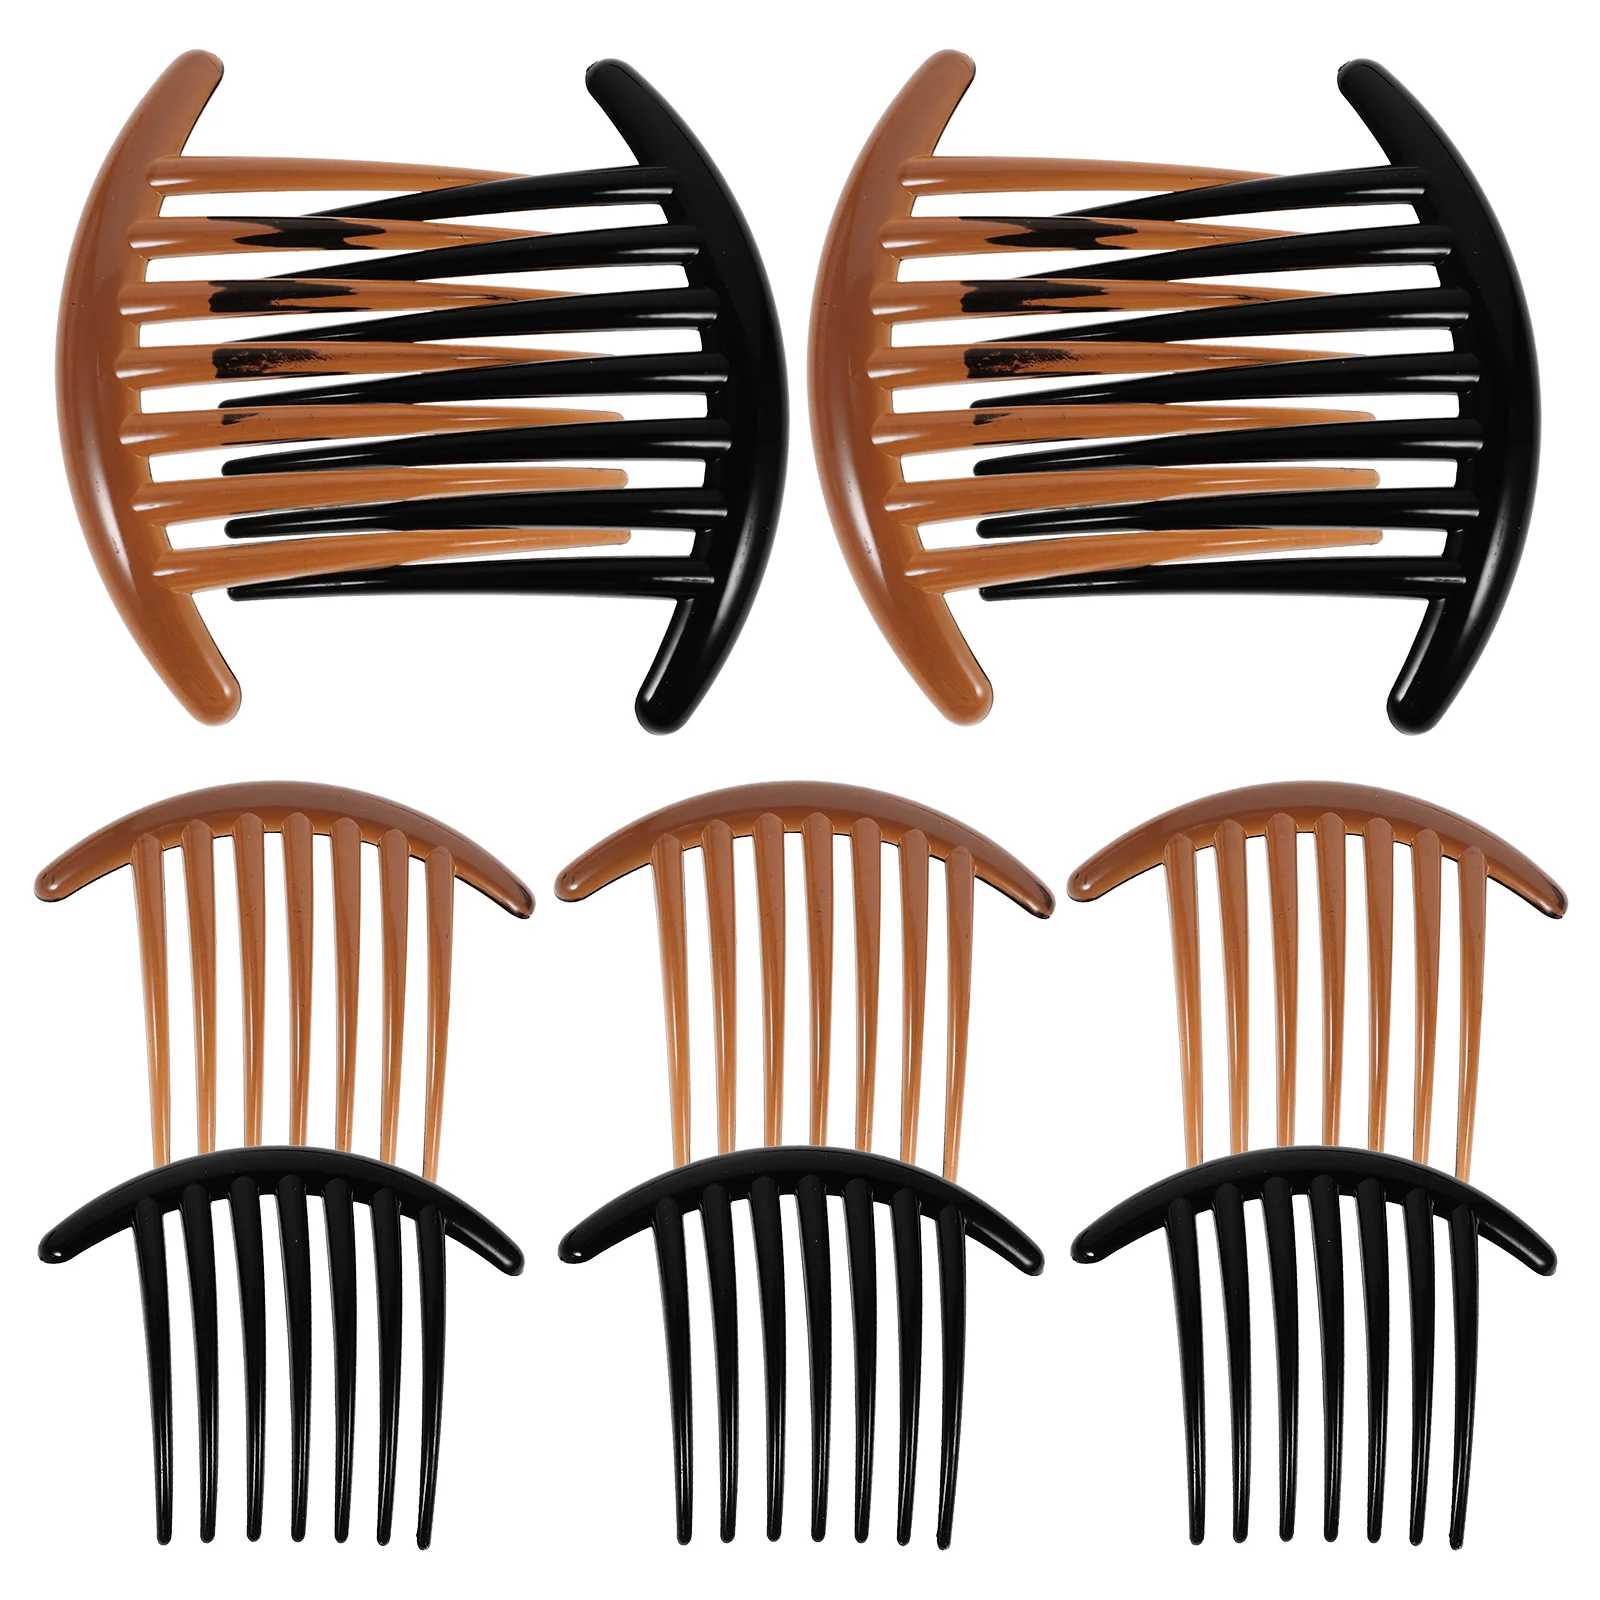 

Гребни акриловые для женщин и девушек, набор из 10 гребней с 7 зубцами (черный цвет и кофе)